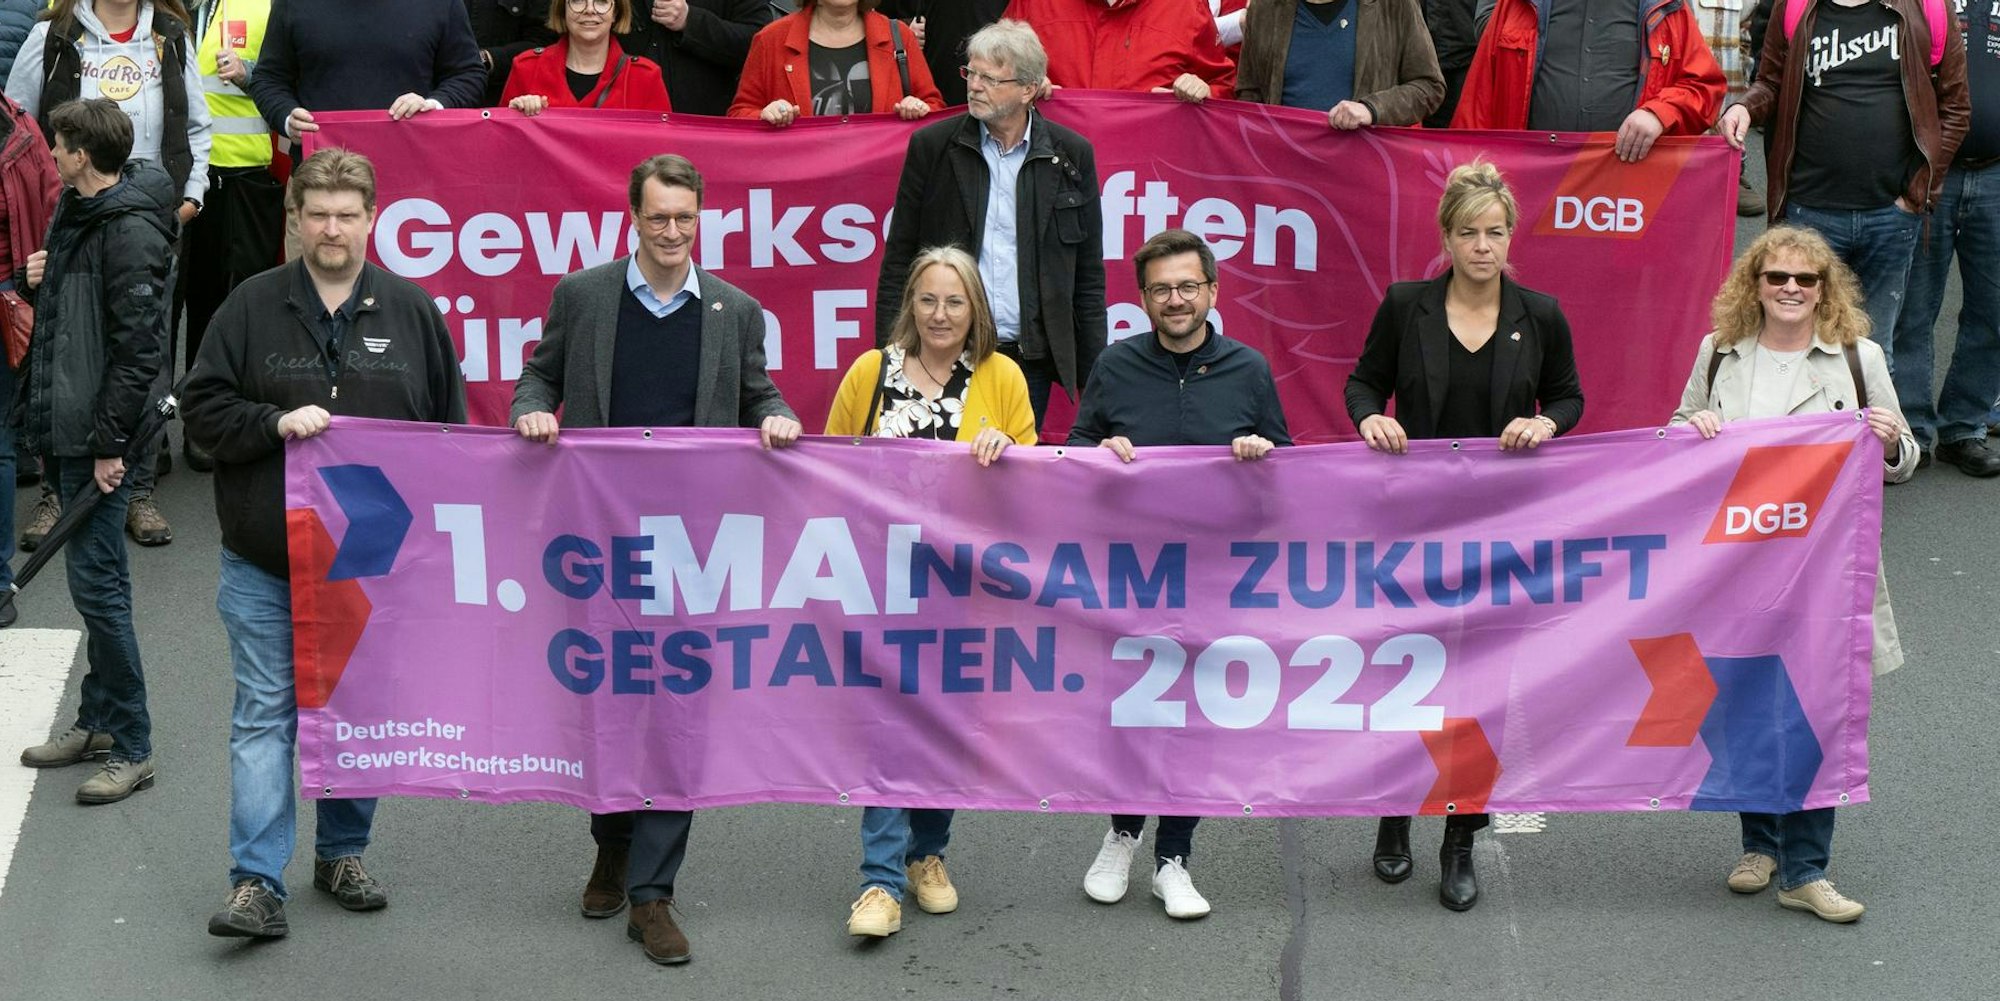 1. Mai NRW Kandidaten LTW